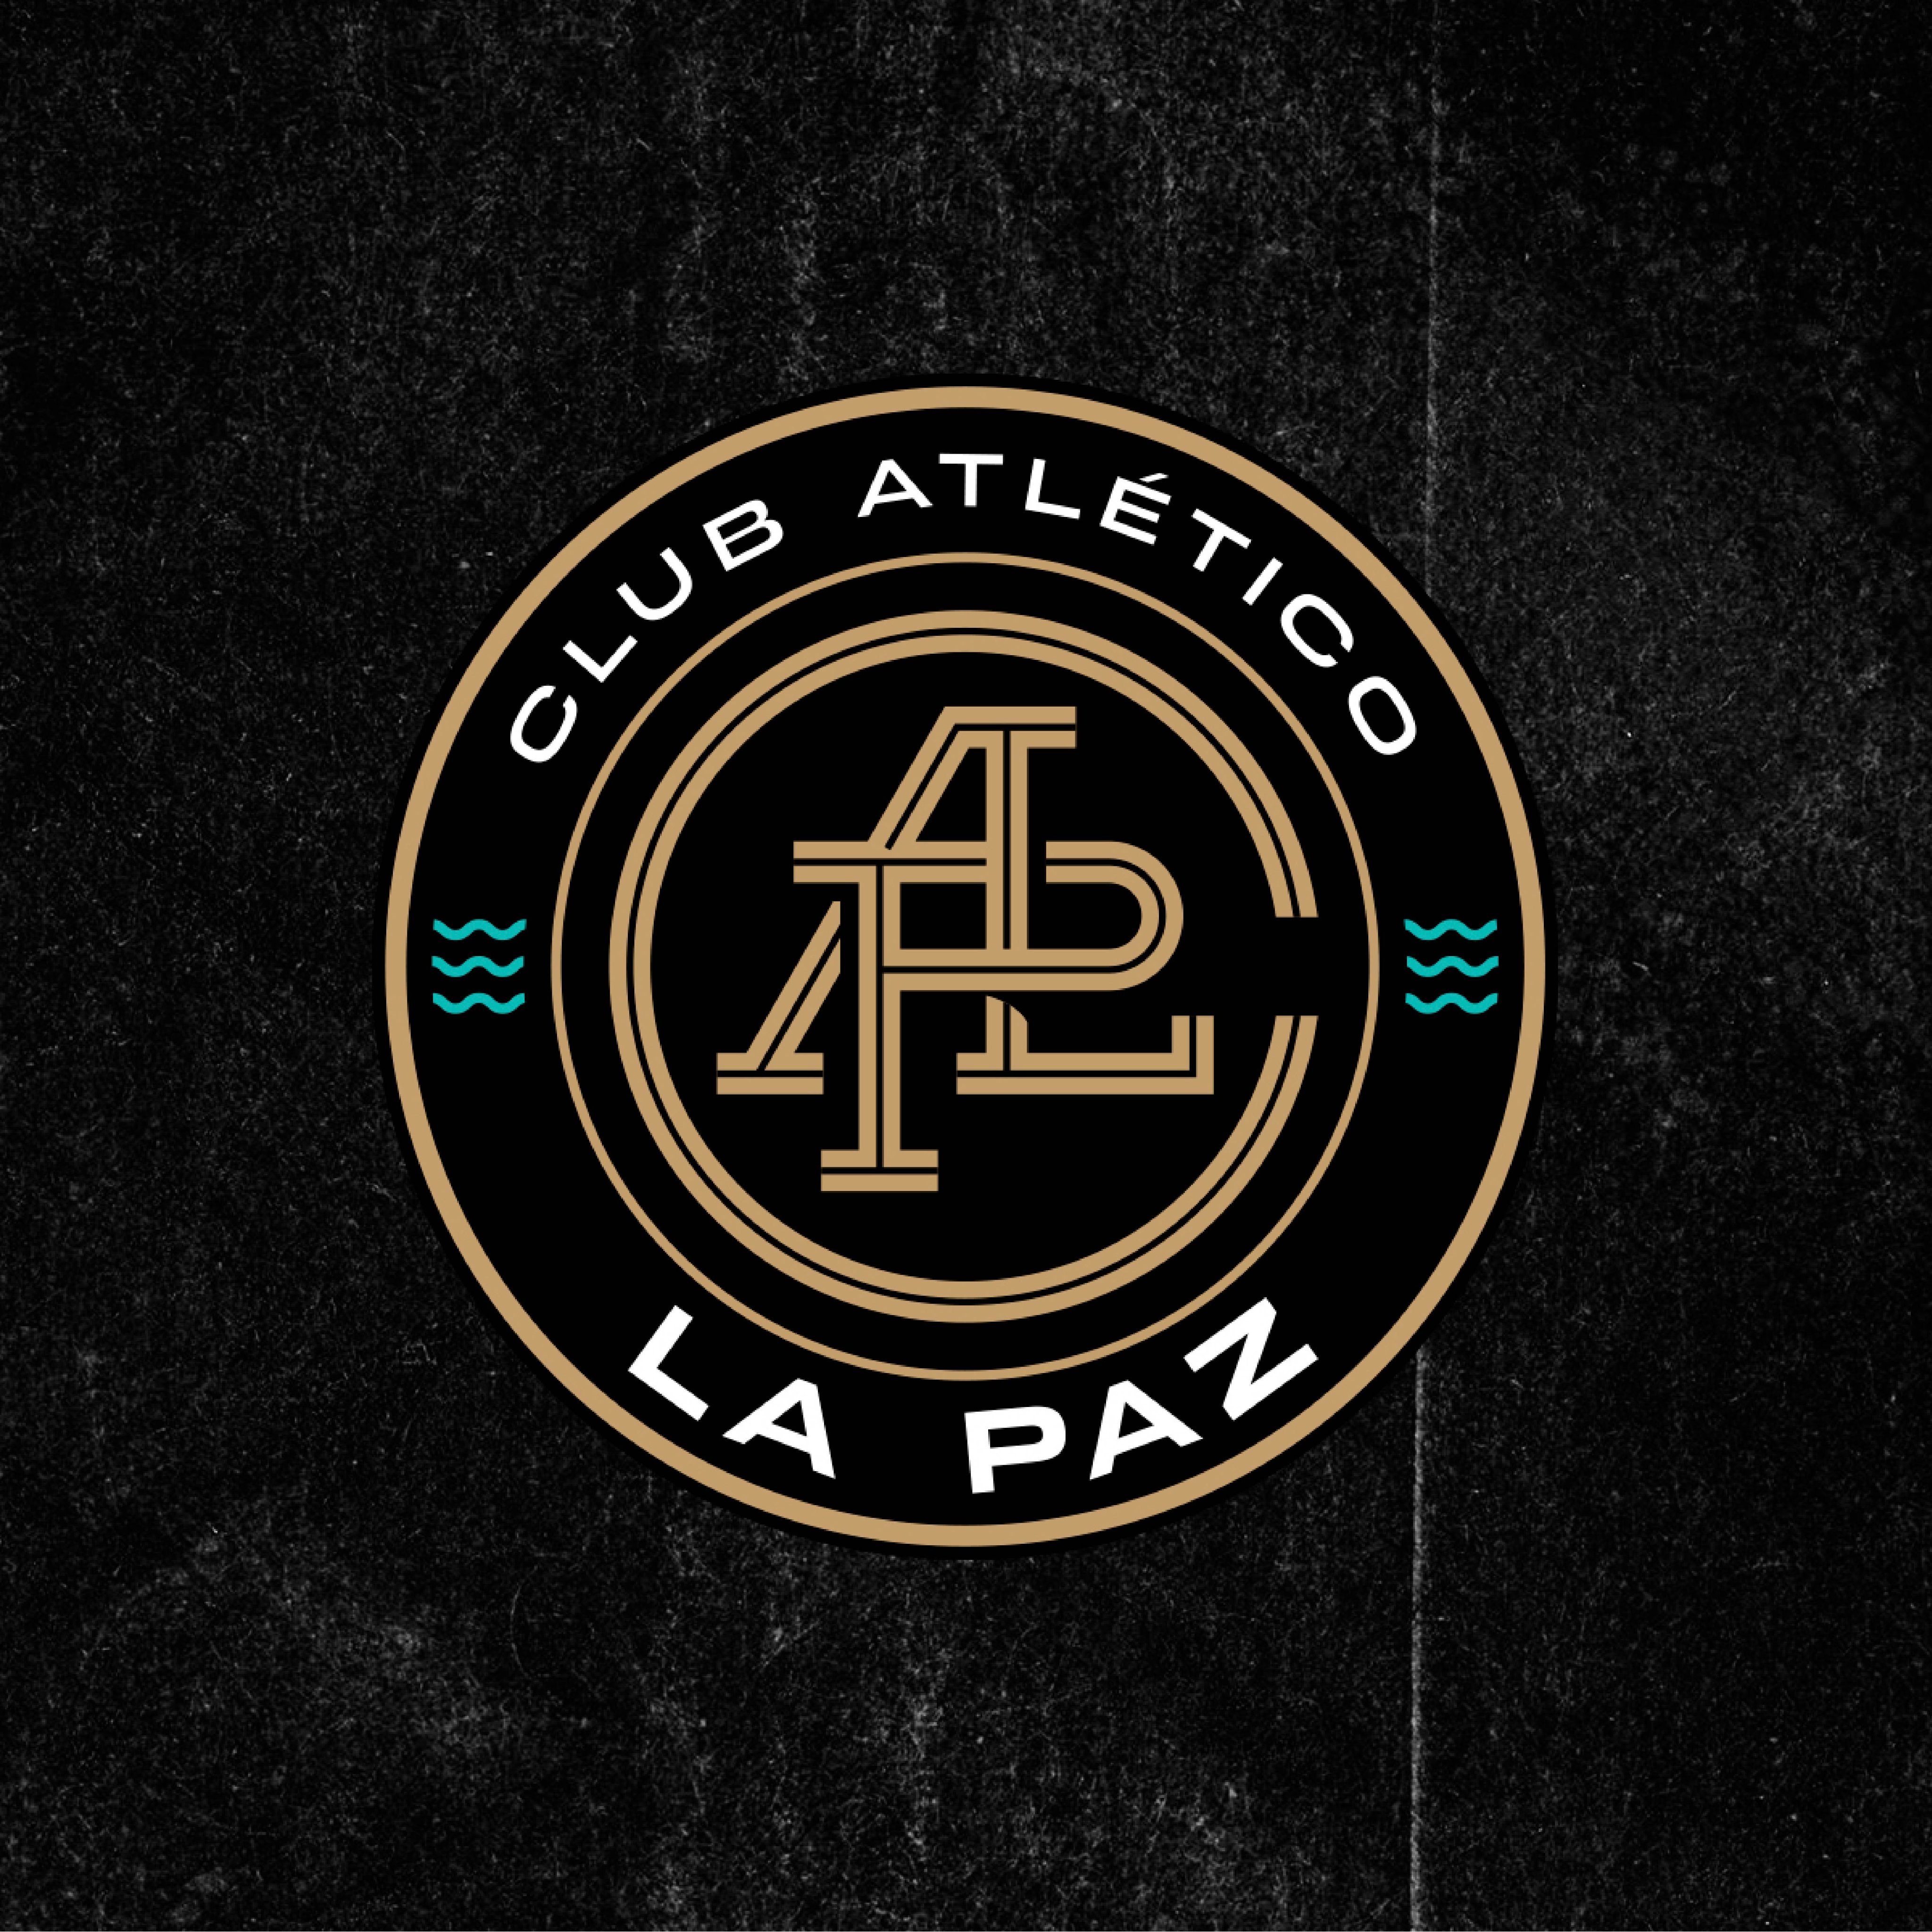 Club Atlético La Paz, el nuevo equipo de la Liga de Expansión MX (Foto: Twitter/@atleticolapaz)